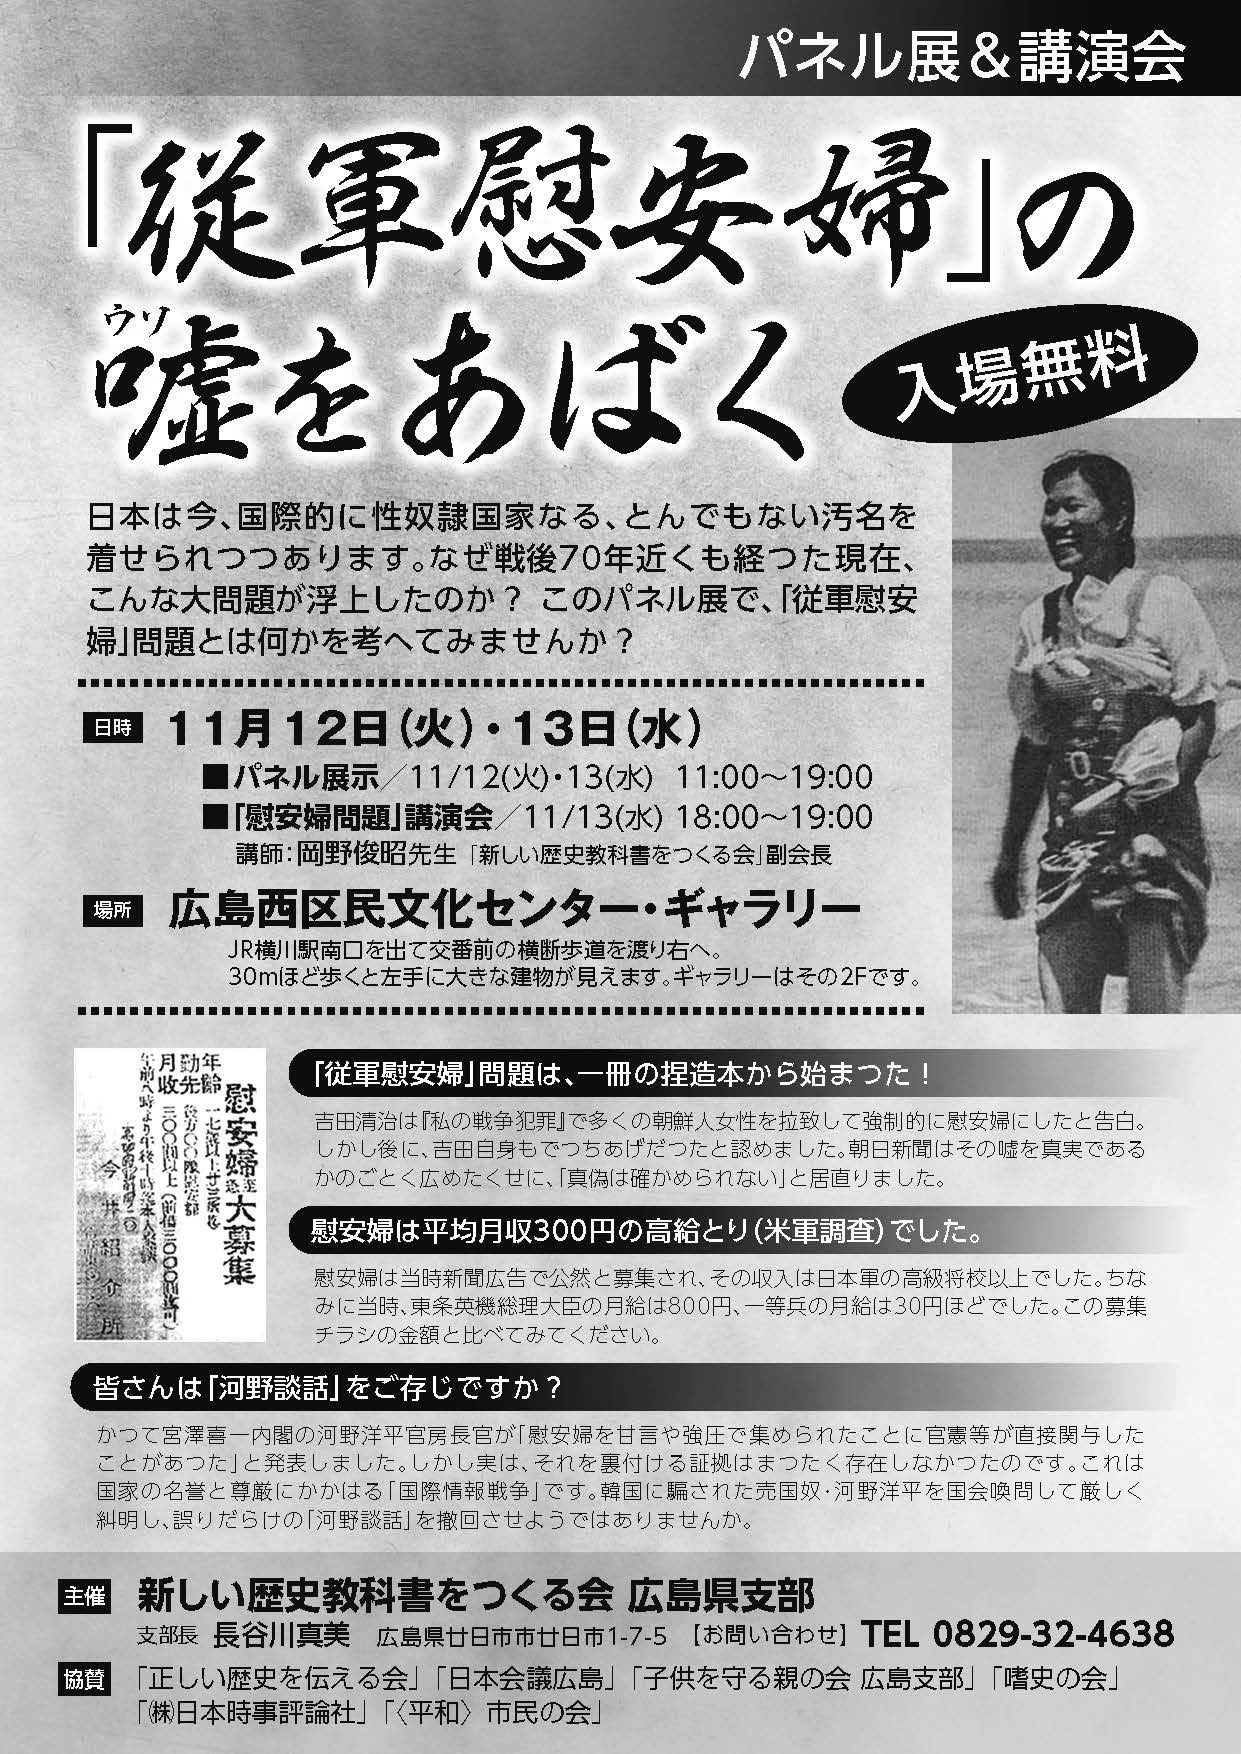 従軍慰安婦 の嘘をあばくパネル展 真実はもっと知られるべき 更新情報 日本会議広島